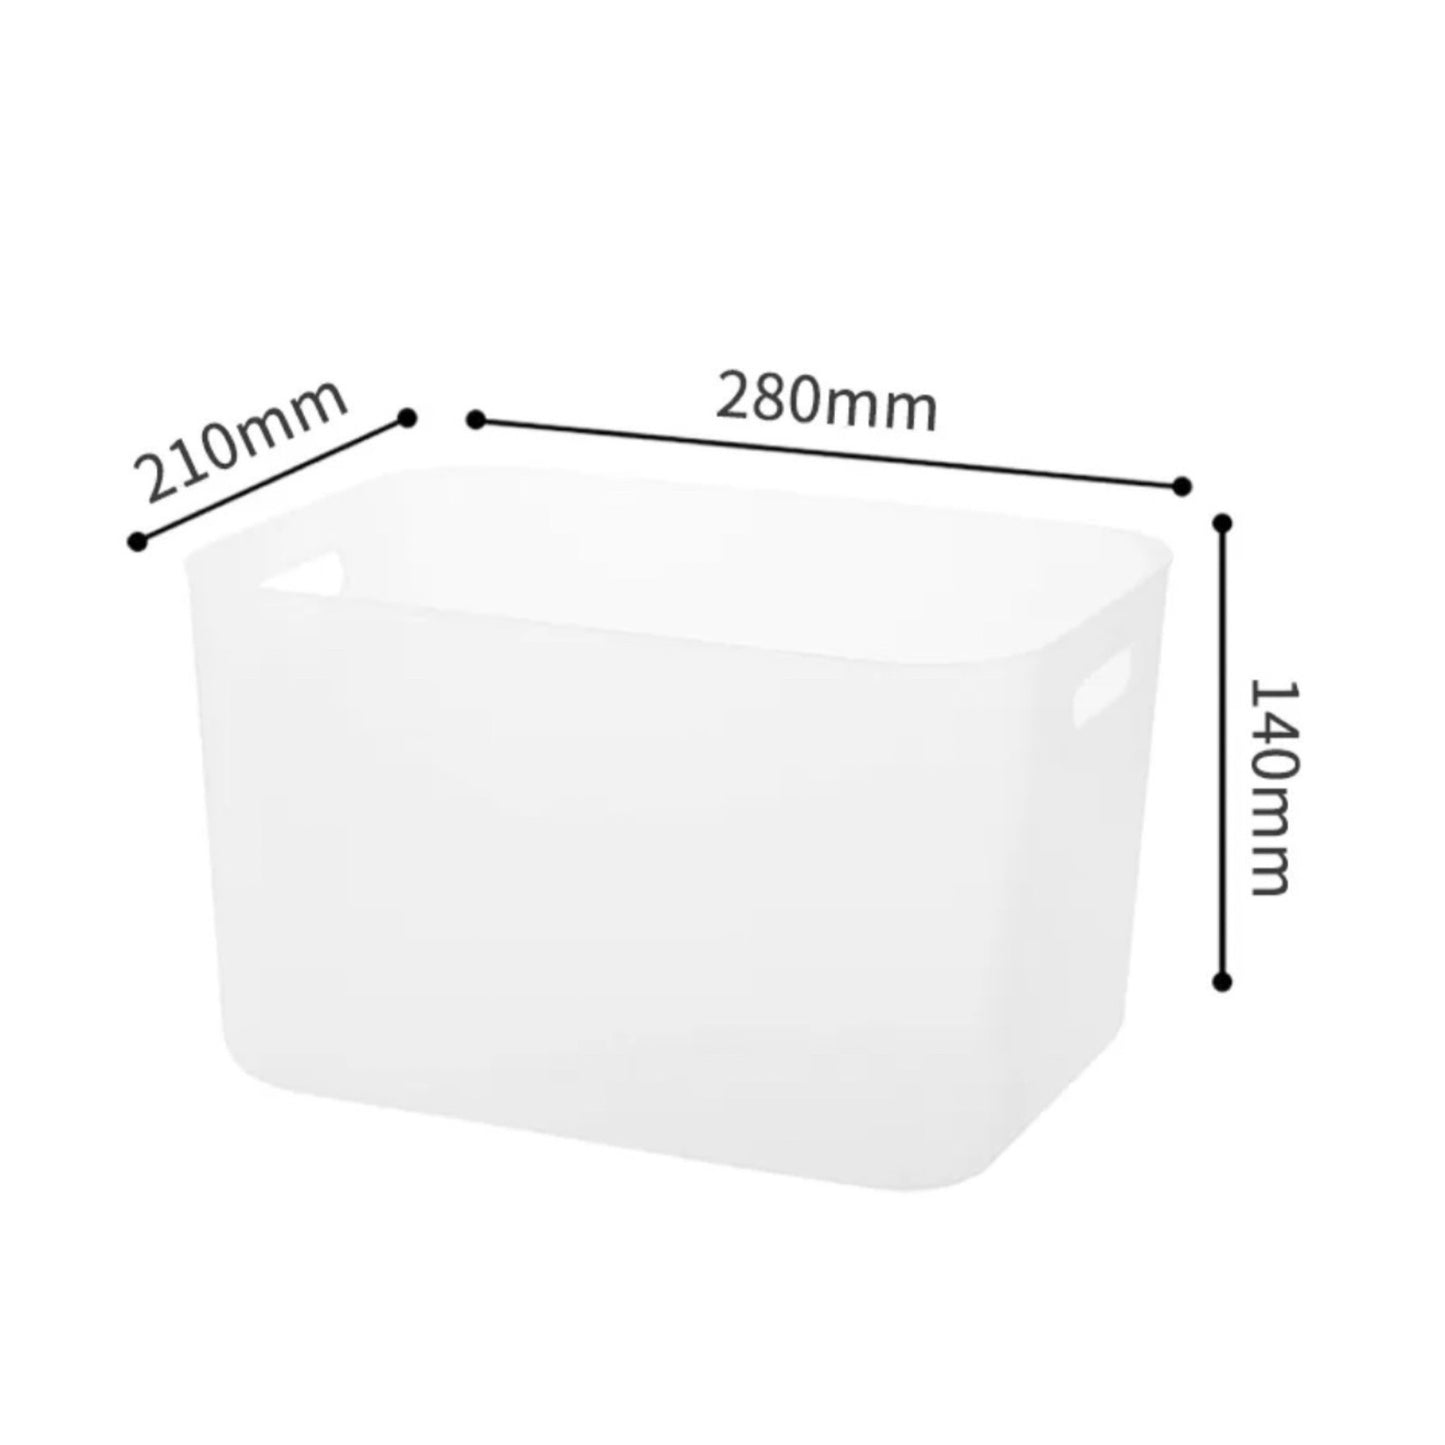 Weiße Aufbewahrungsbox mit Maßangaben. Die Länge beträgt 280 mm an der oberen Kante, die Breite 210 mm an der seitlichen Kante und die Höhe der Box ist 140 mm.